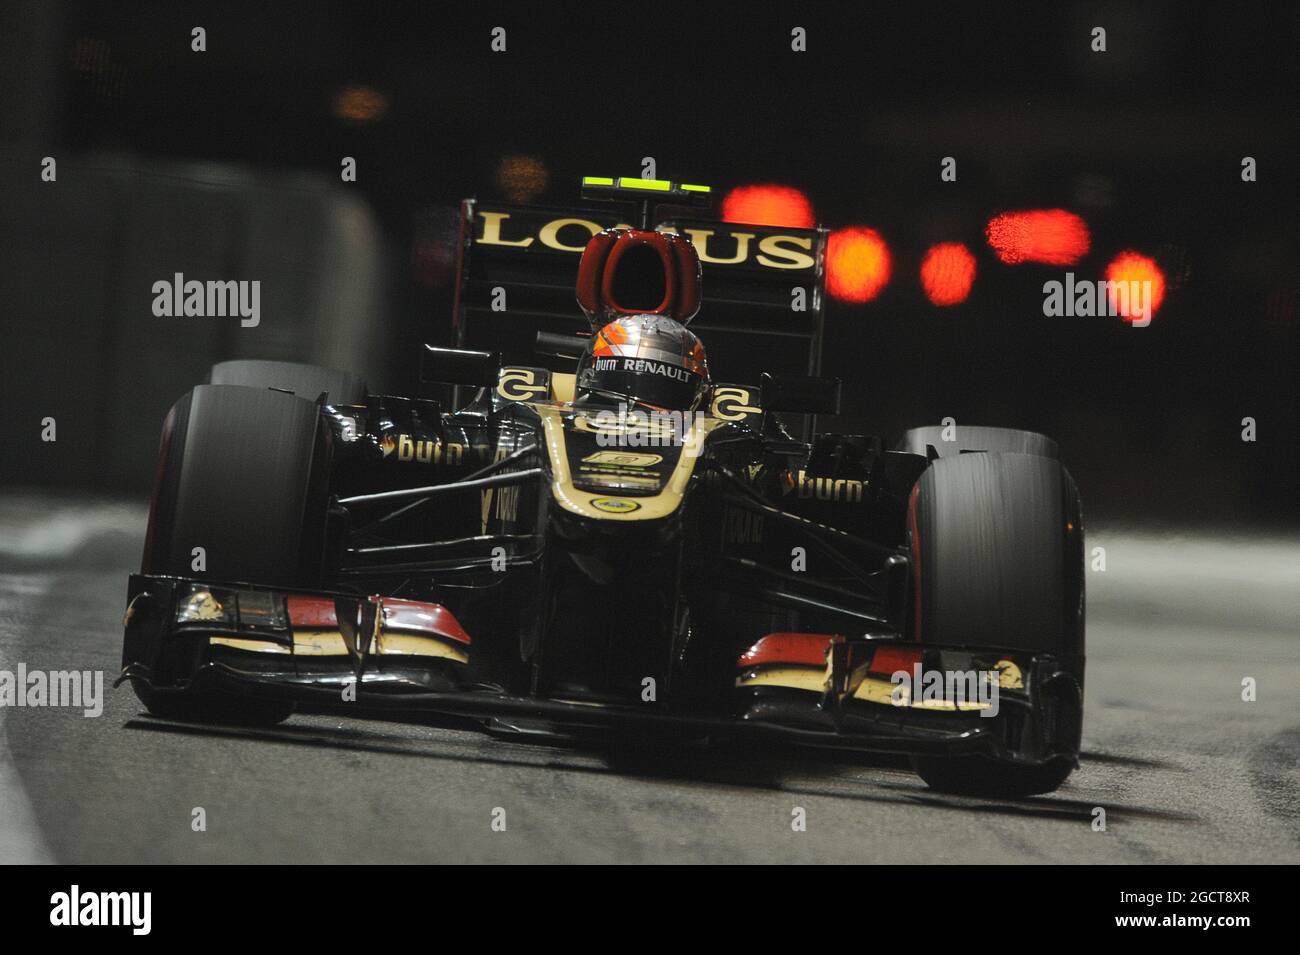 Romain Grosjean (fra) Lotus F1 E21. Gran Premio di Singapore, domenica 22 settembre 2013. Circuito Marina Bay Street, Singapore. Foto Stock